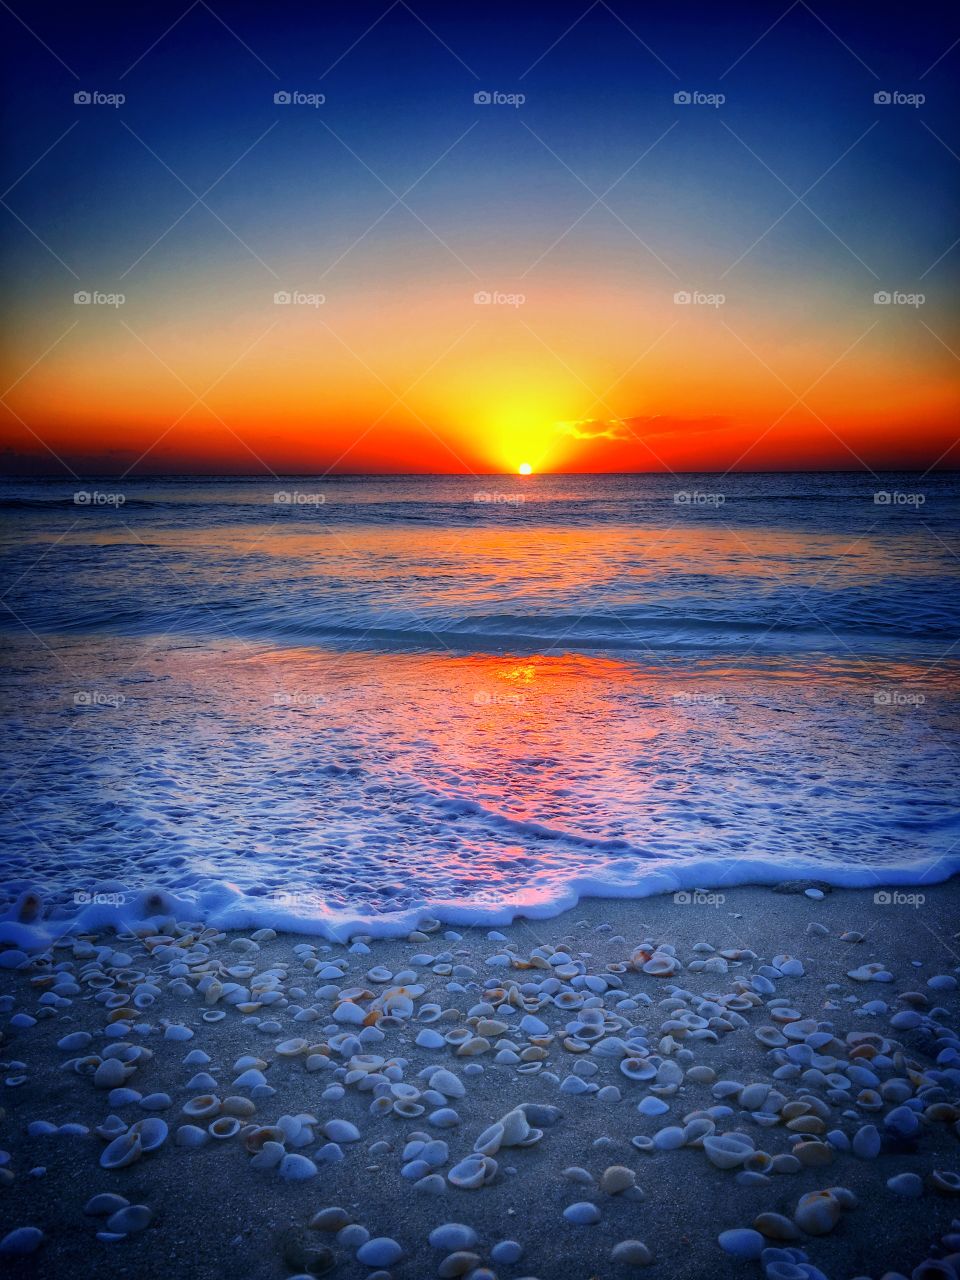 Seashells on beach during sunset